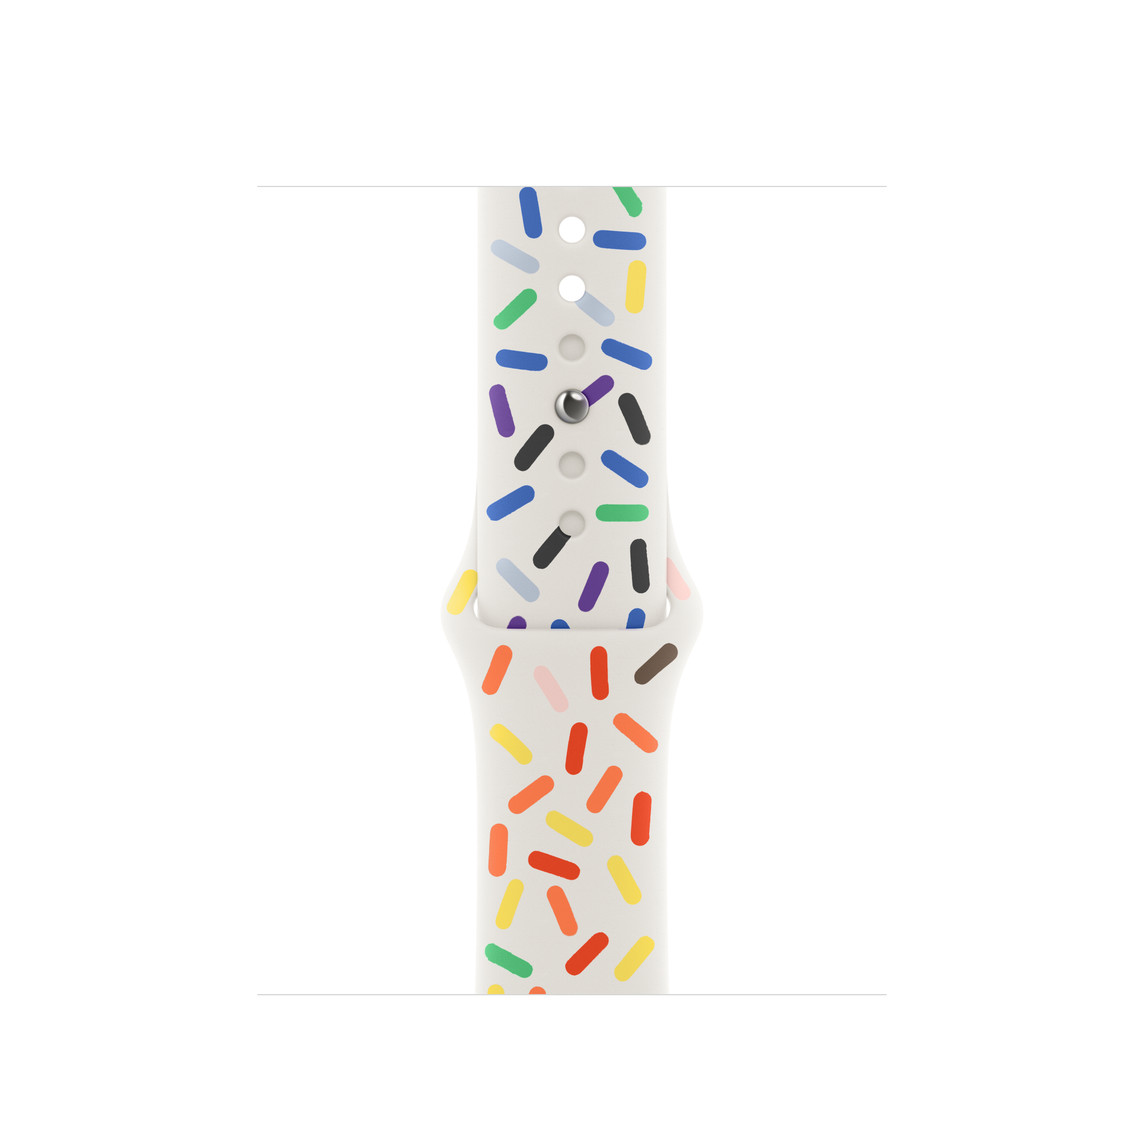 Correa deportiva Edición Orgullo, blanca decorada con óvalos de varios colores del arcoíris, hecha de fluoroelastómero suave con cierre de encastre.